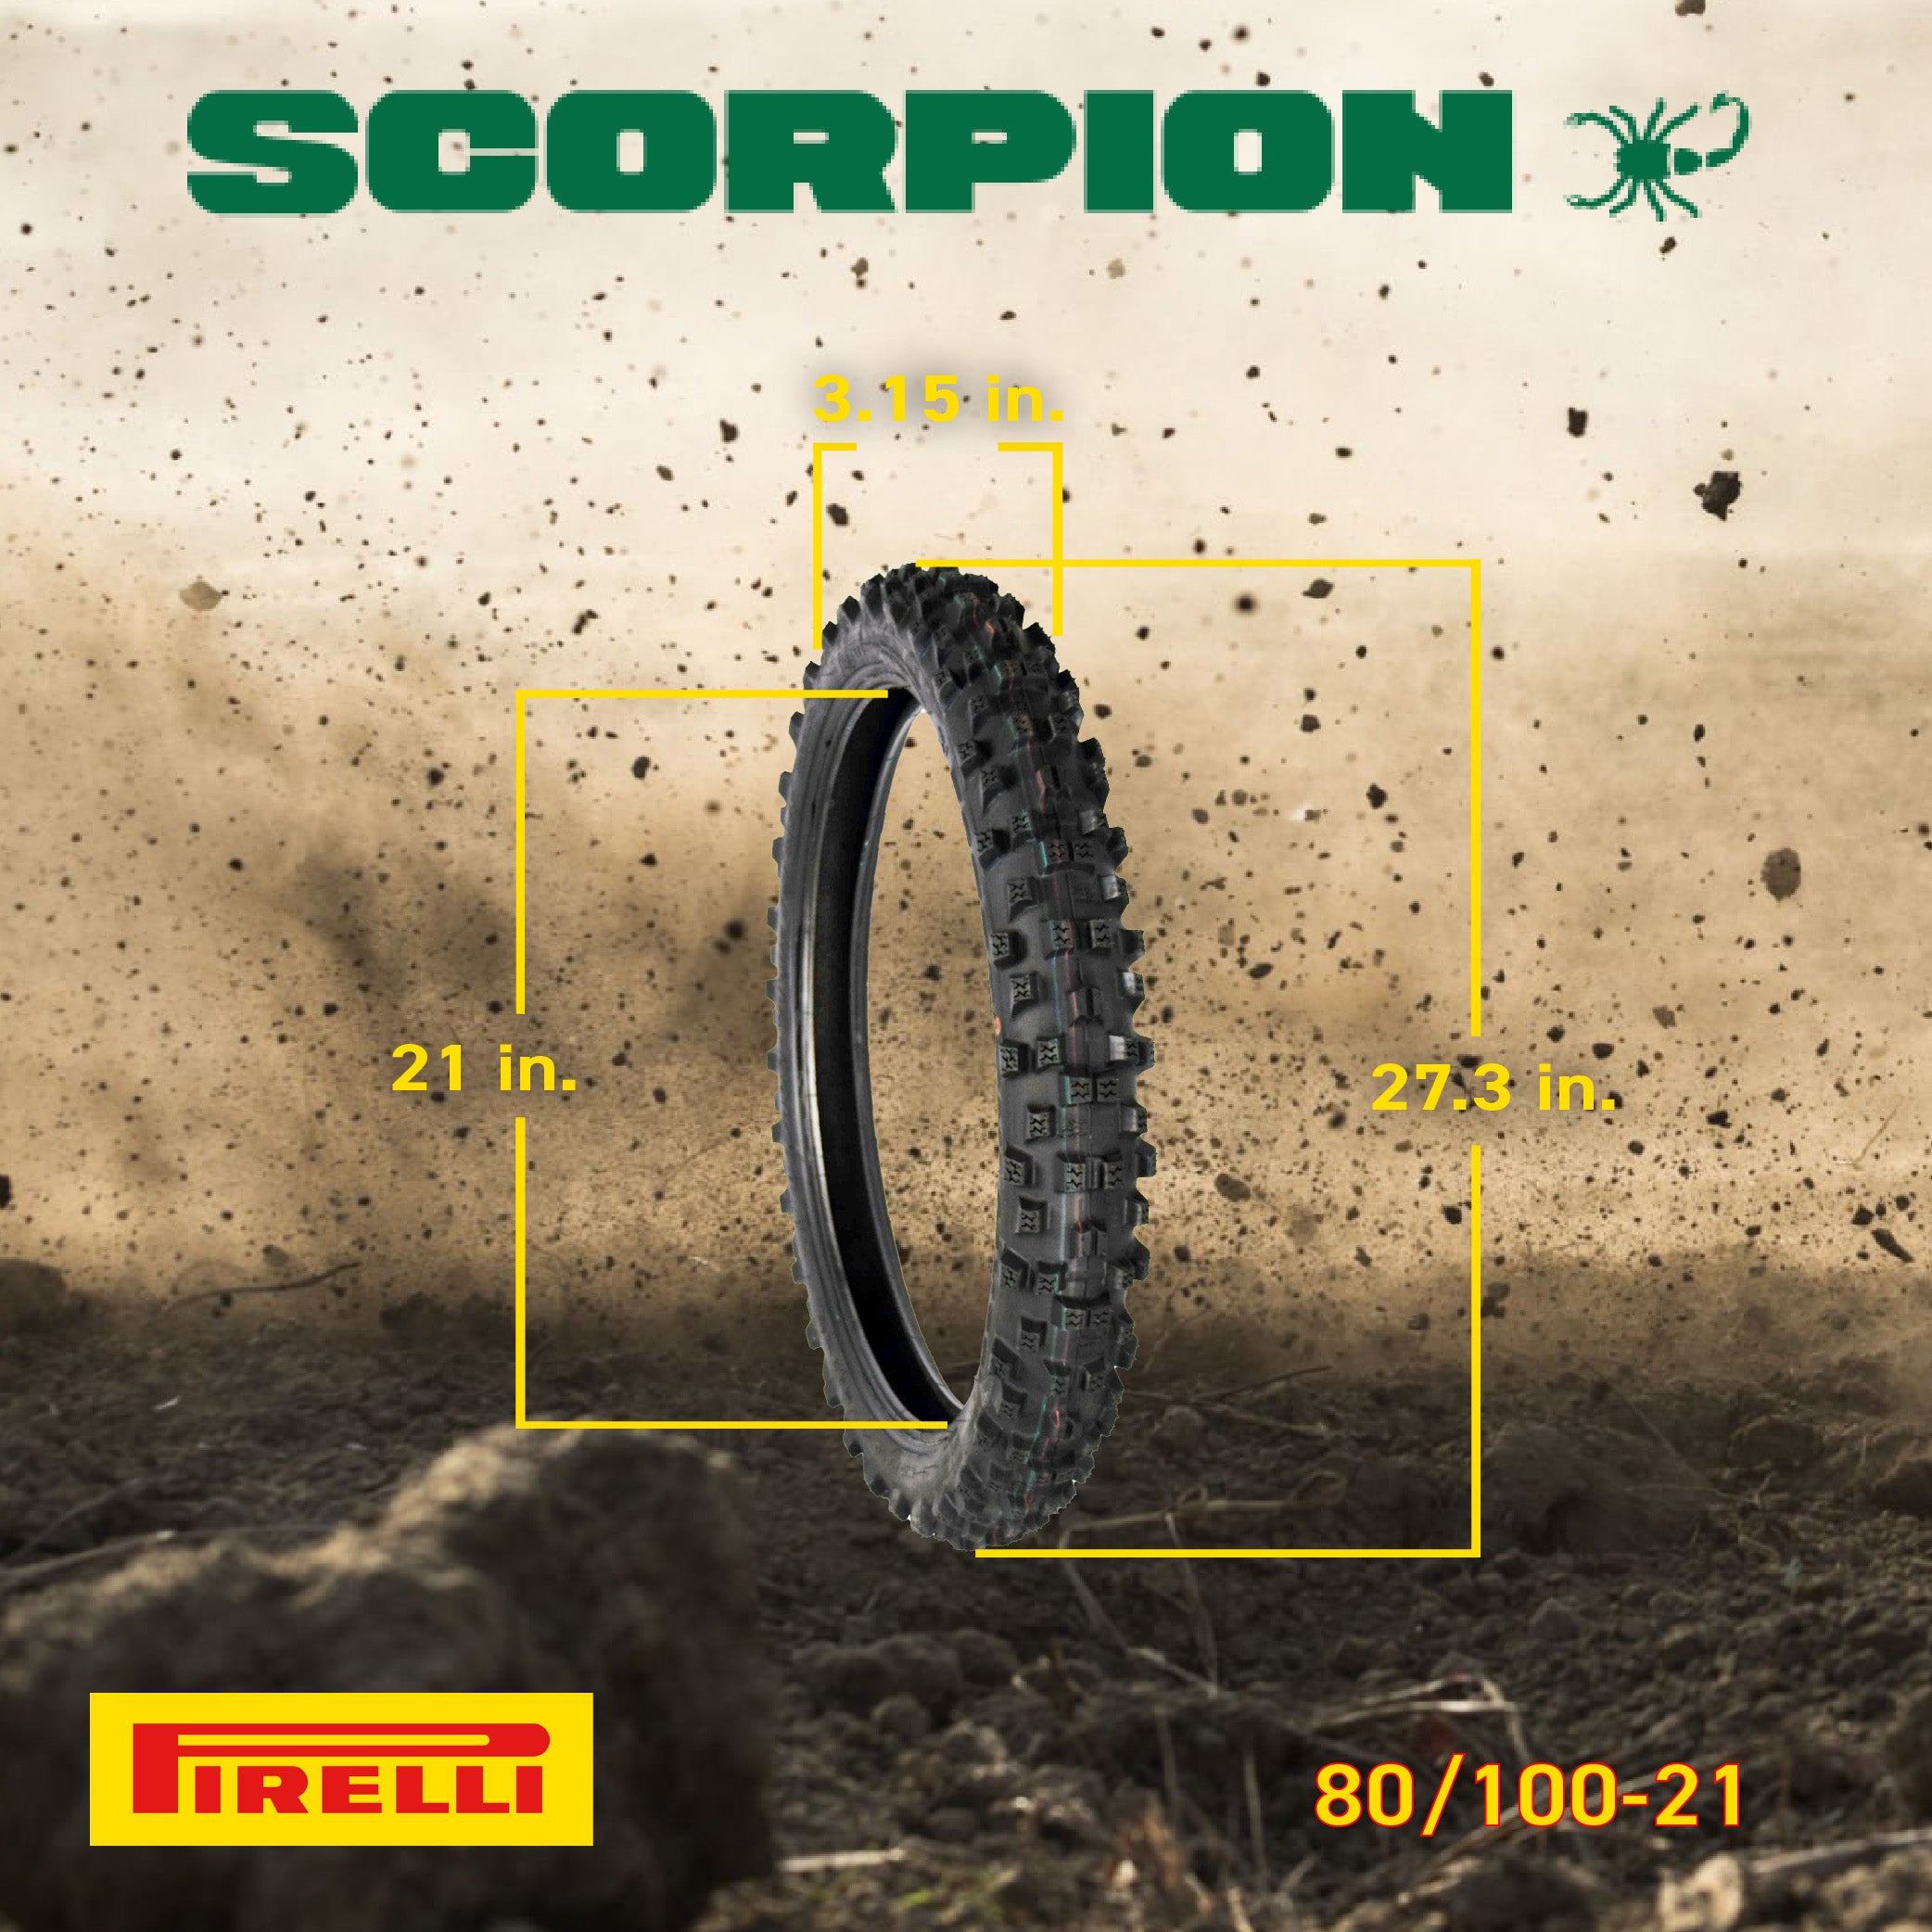 Pirelli Scorpion Extra X 80/100-21 Front 120/90-19 Rear Bias Tires Set